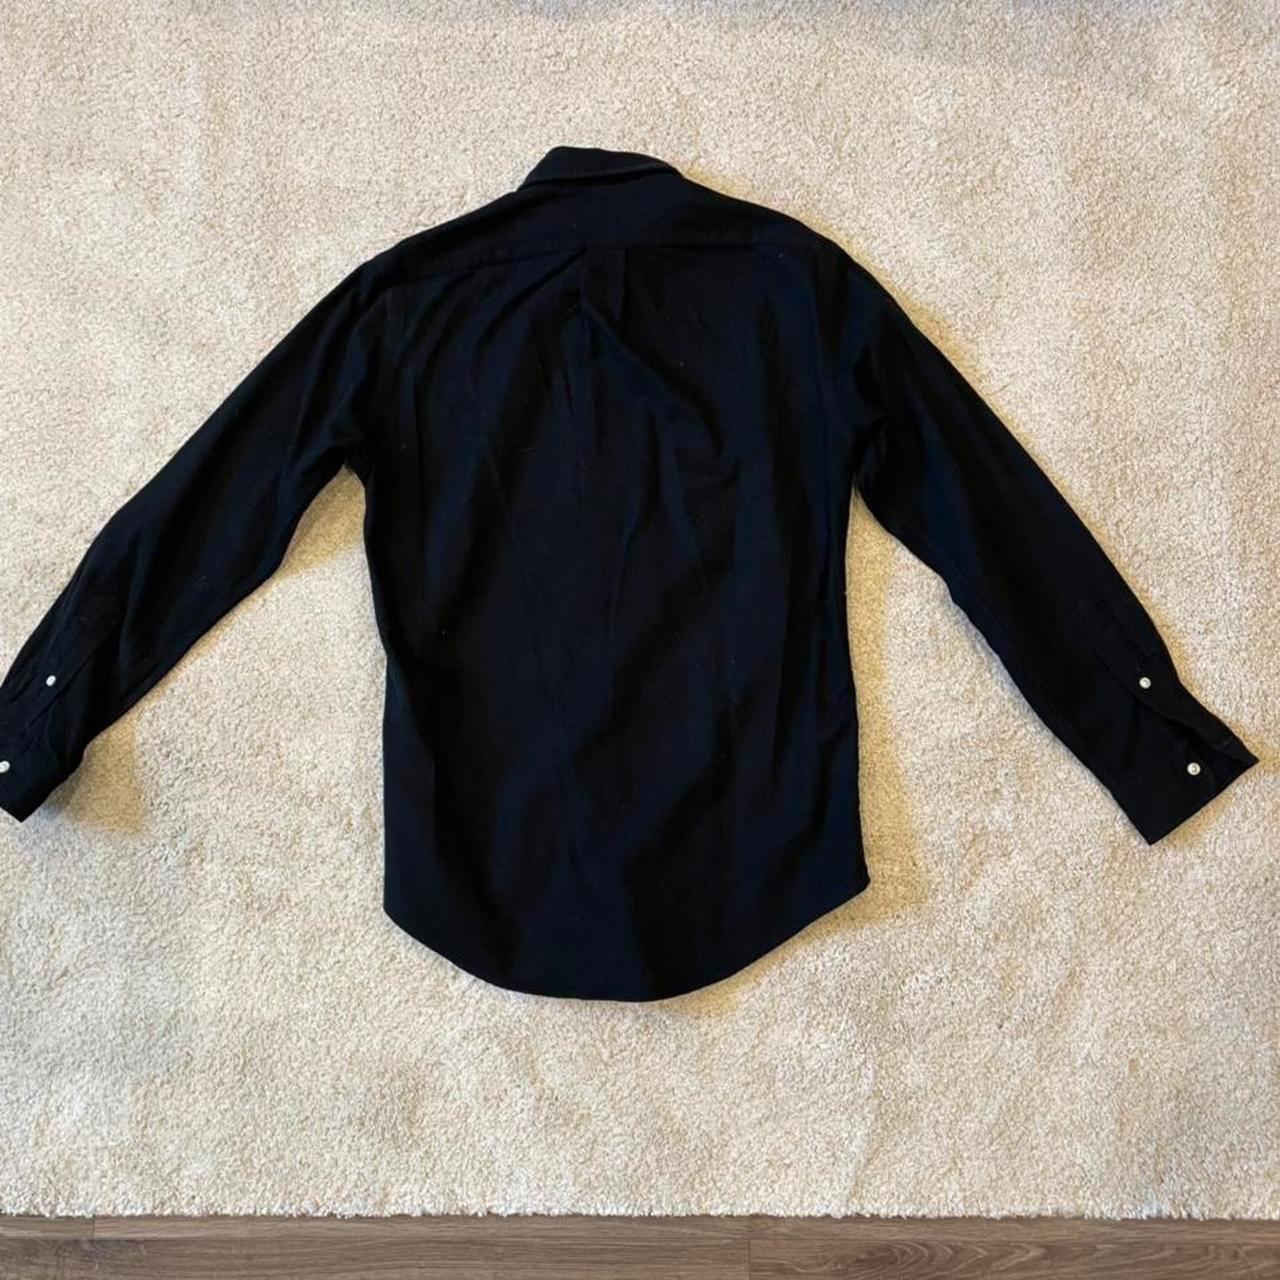 RALPH LAUREN black shirt custom fit, long... - Depop